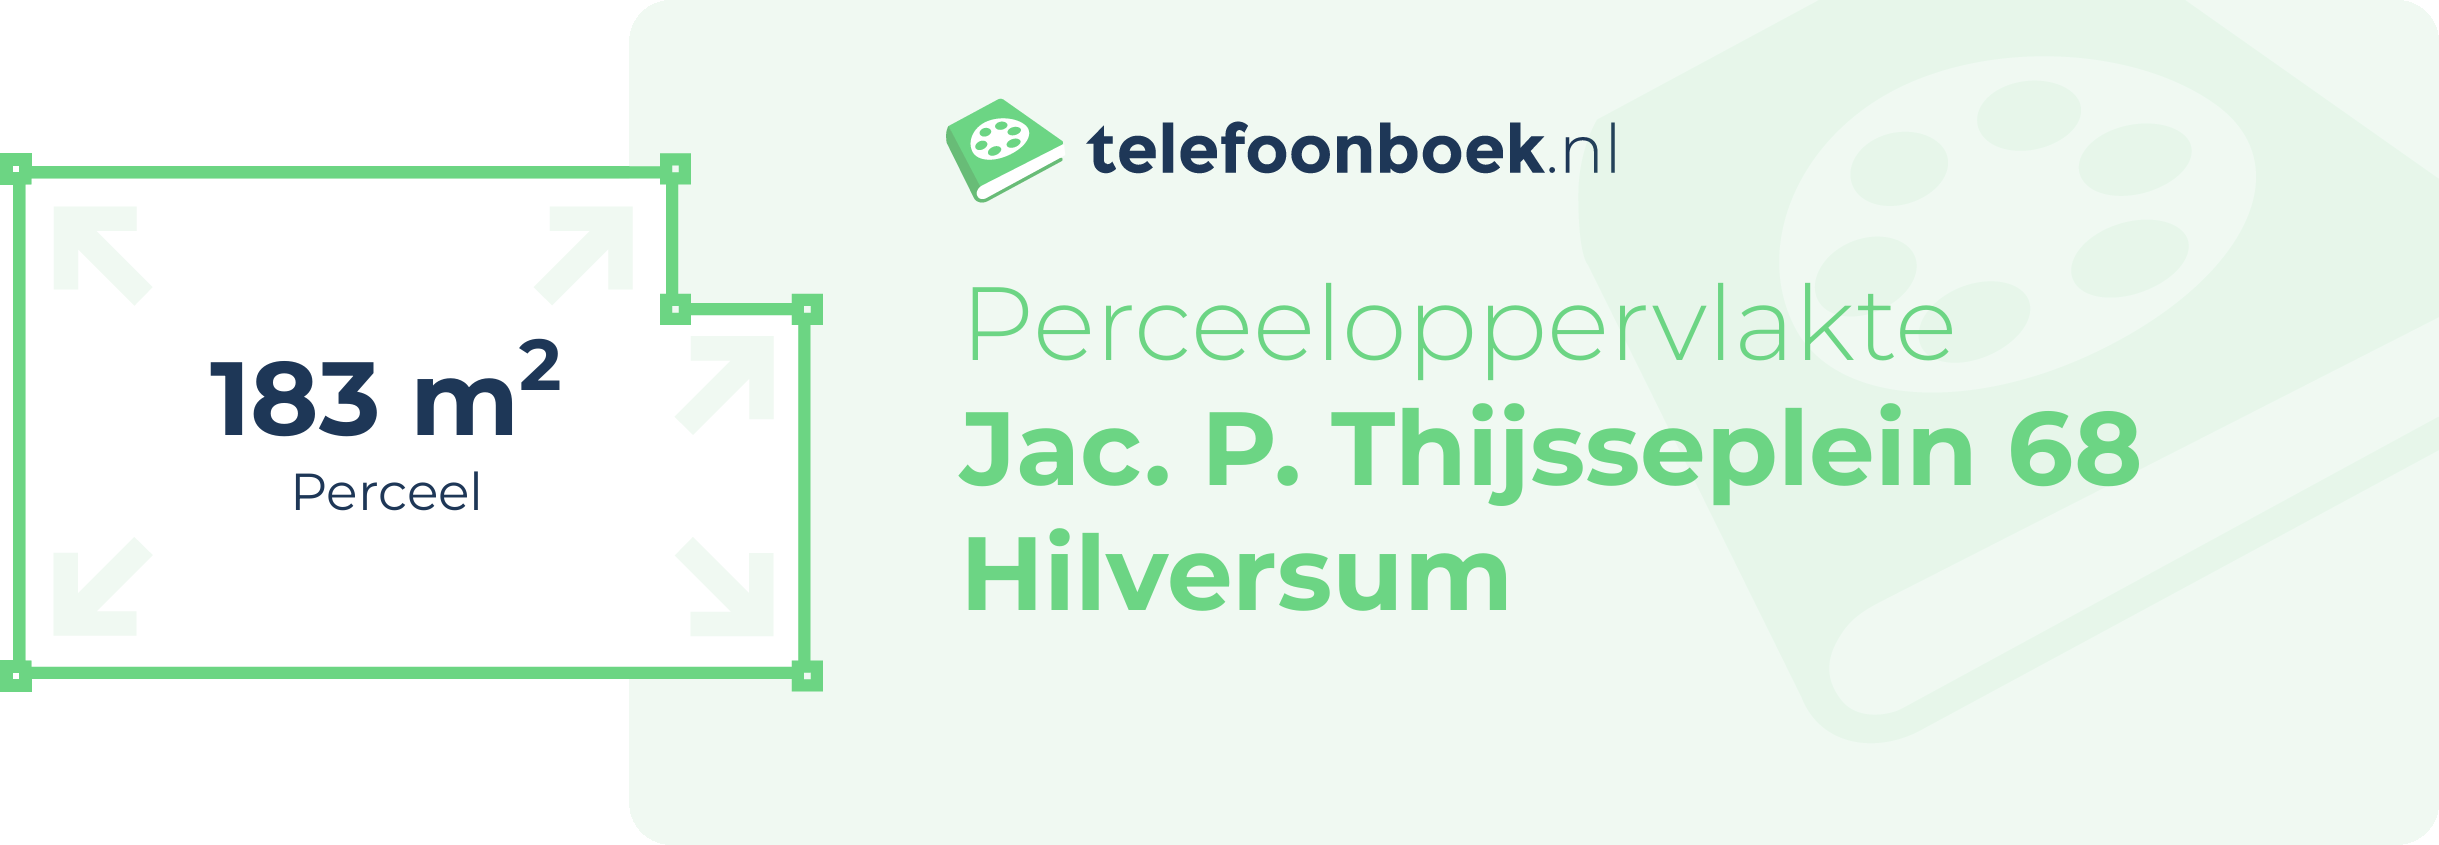 Perceeloppervlakte Jac. P. Thijsseplein 68 Hilversum